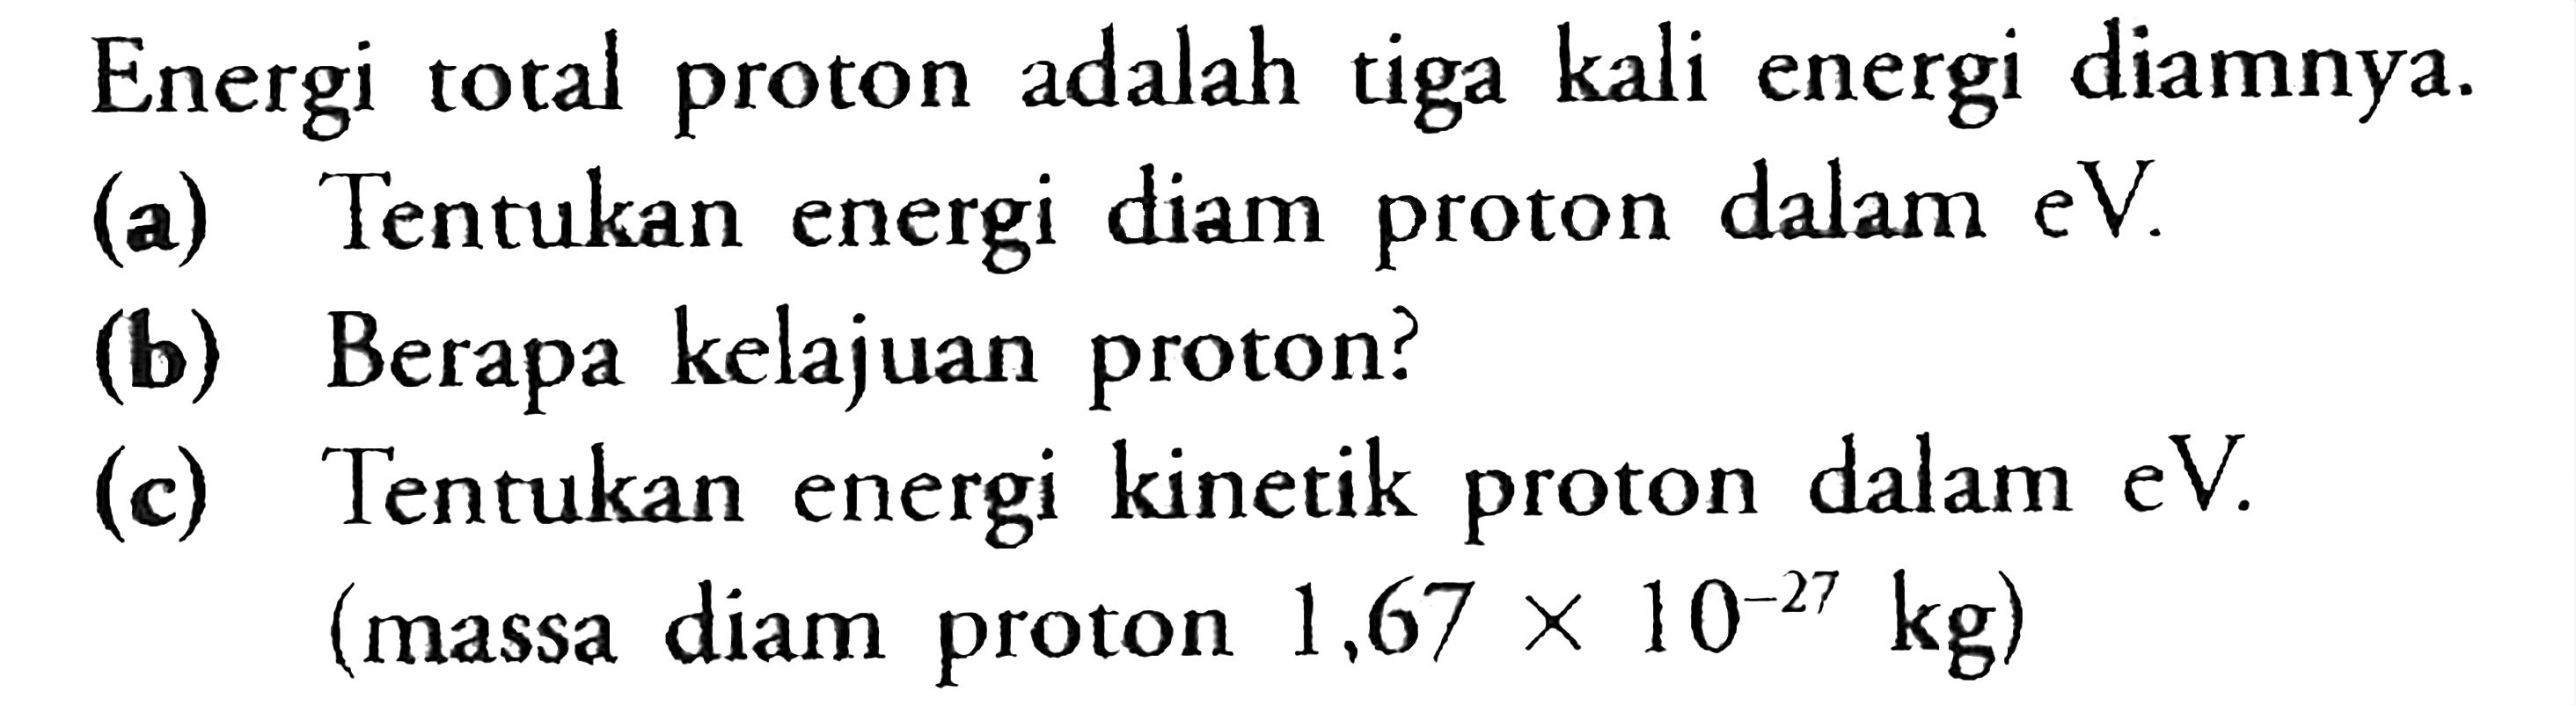 Energi total proton adalah tiga kali energi diamnya.(a) Tentukan energi diam proton dalam eV. (b) Berapa kelajuan proton? (c) Tentukan energi kinetik proton dalam eV. (massa diam proton 1,67 x 10^(-27) kg) 